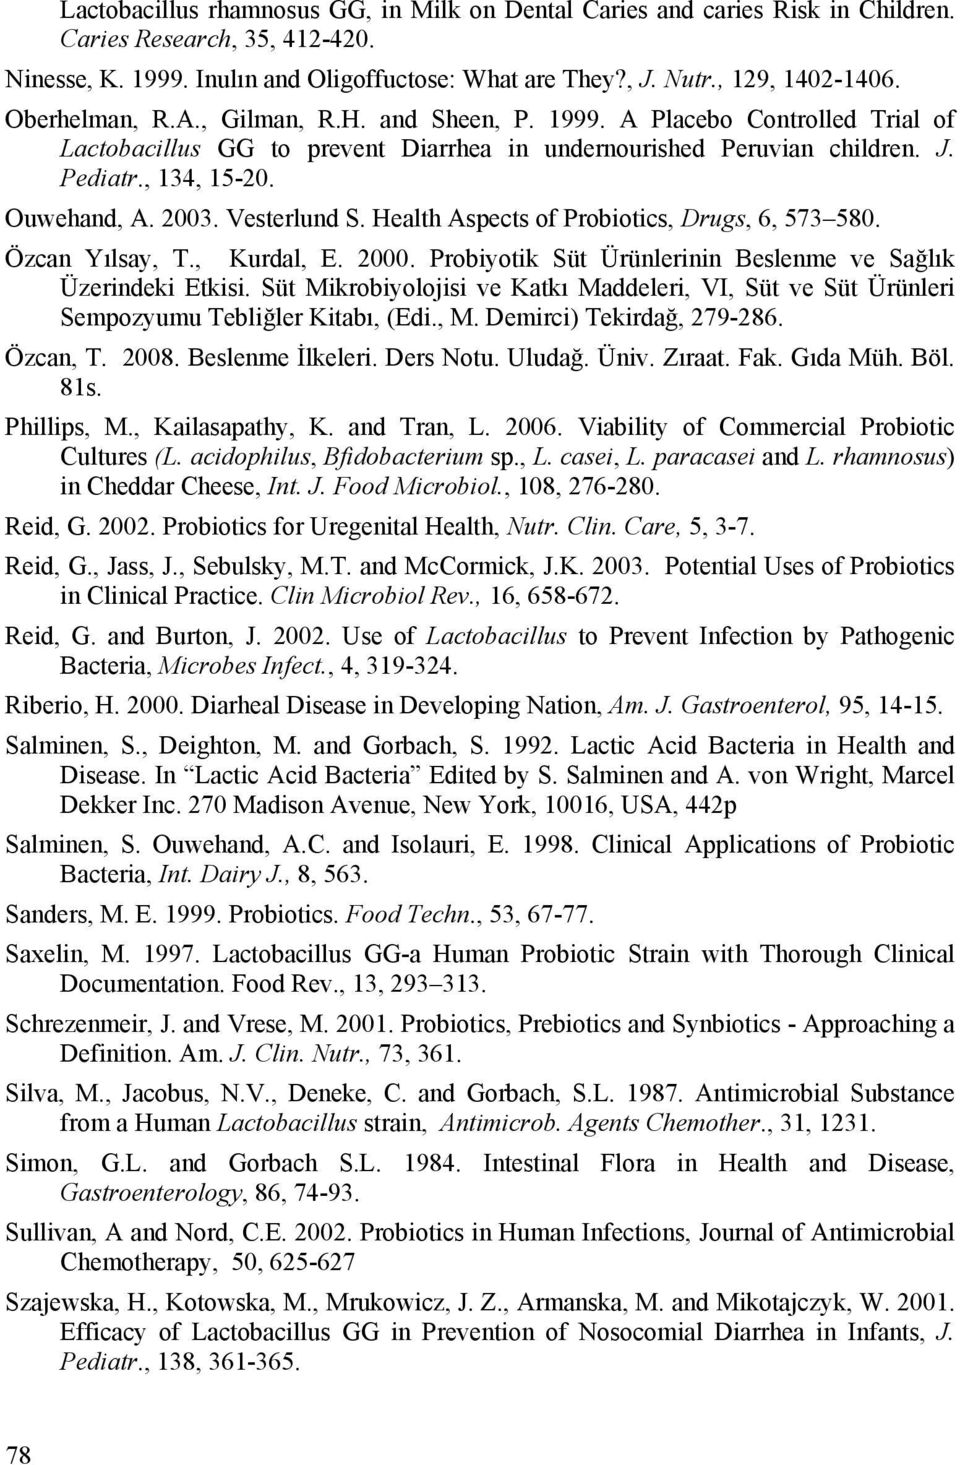 Vesterlund S. Health Aspects of Probiotics, Drugs, 6, 573 580. Özcan Yılsay, T., Kurdal, E. 2000. Probiyotik Süt Ürünlerinin Beslenme ve Sağlık Üzerindeki Etkisi.